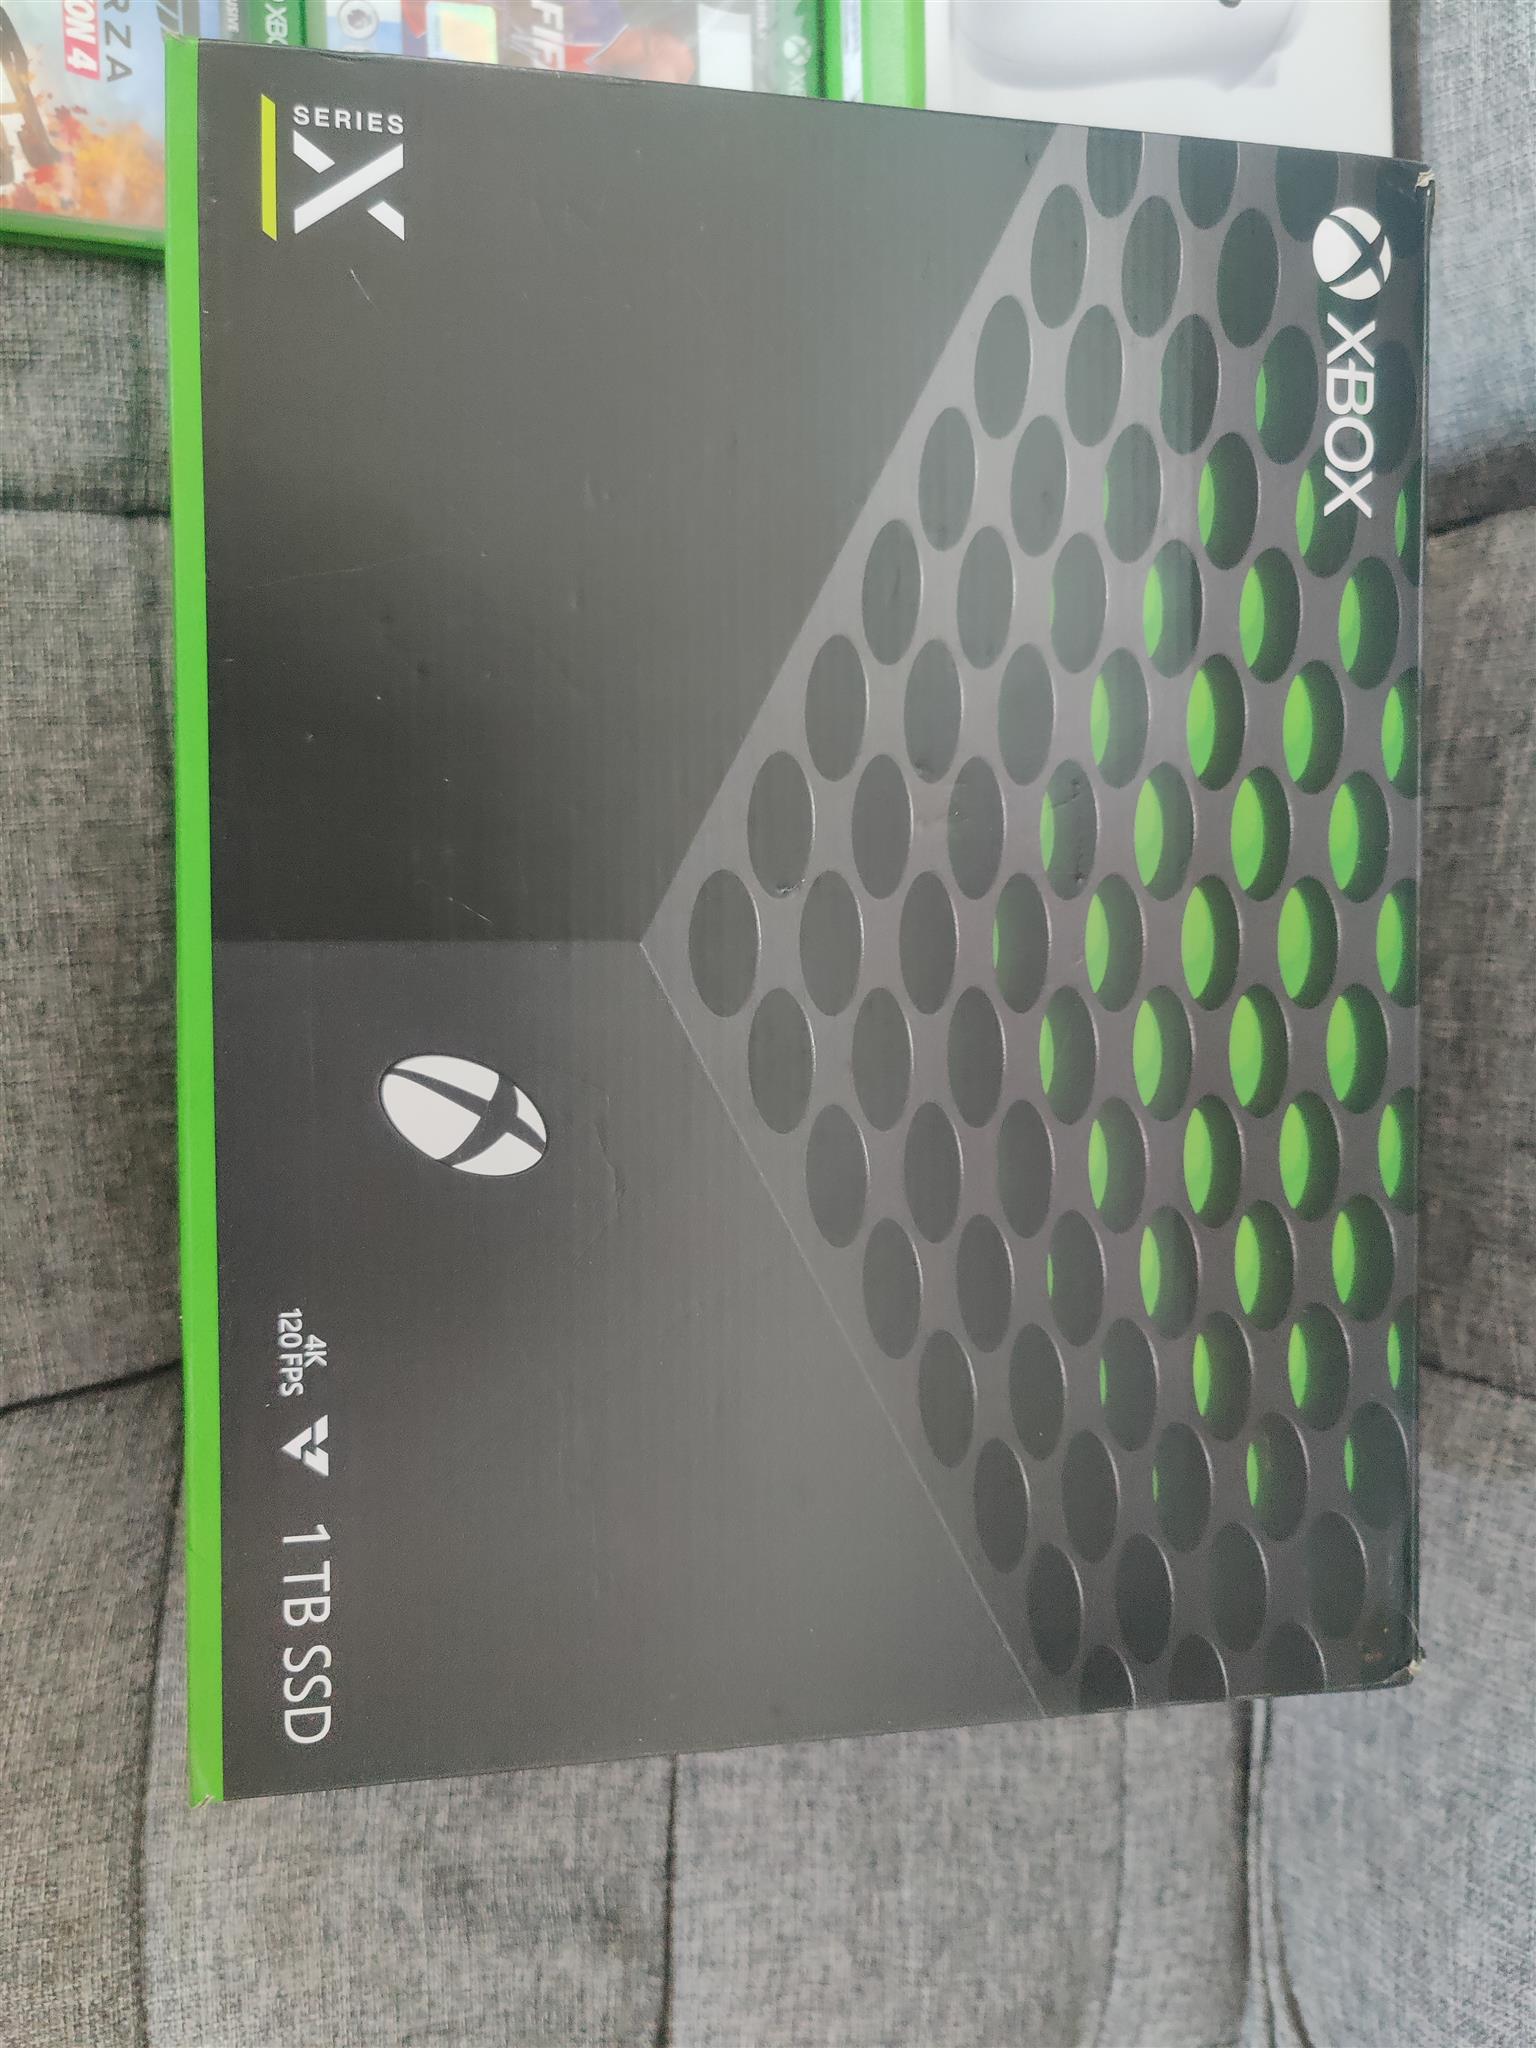 Xbox series x 1tb ssd brand new 